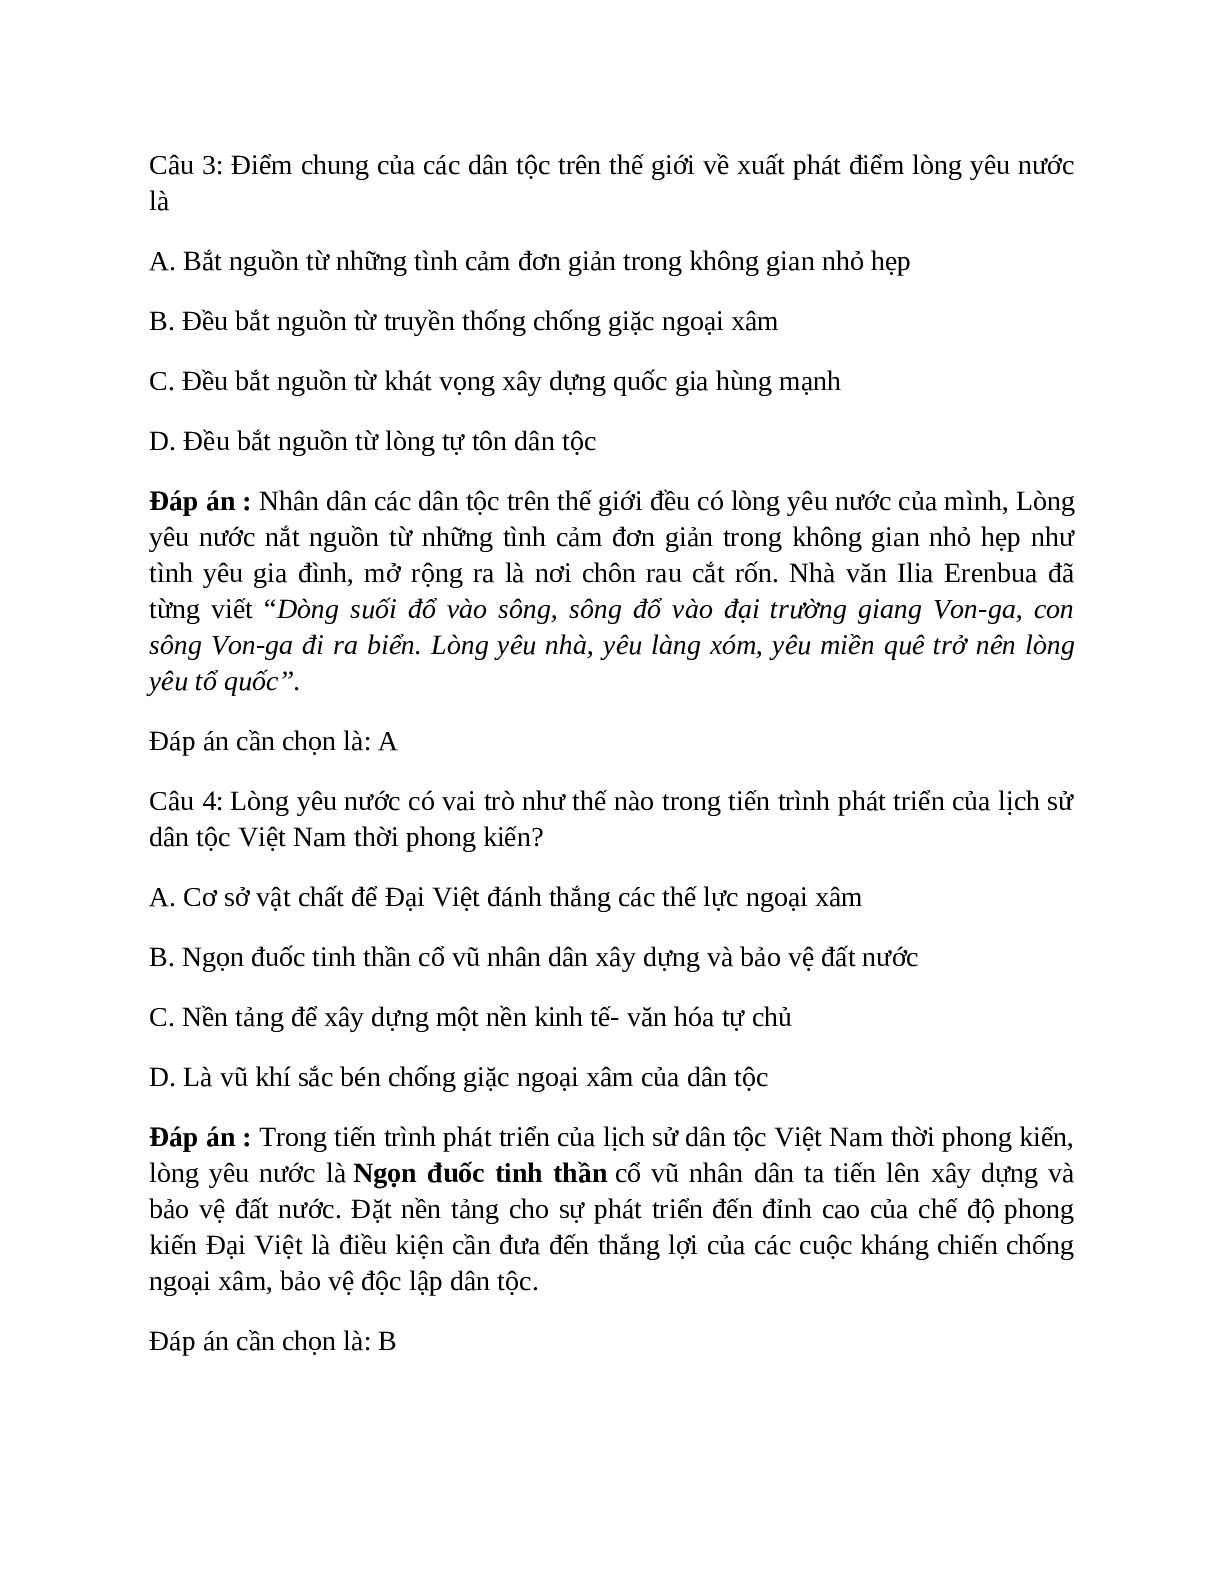 Lịch Sử 10 Bài 28 (Lý thuyết và trắc nghiệm): Truyền thống yêu nước của dân tộc Việt Nam thời phong kiến (trang 5)